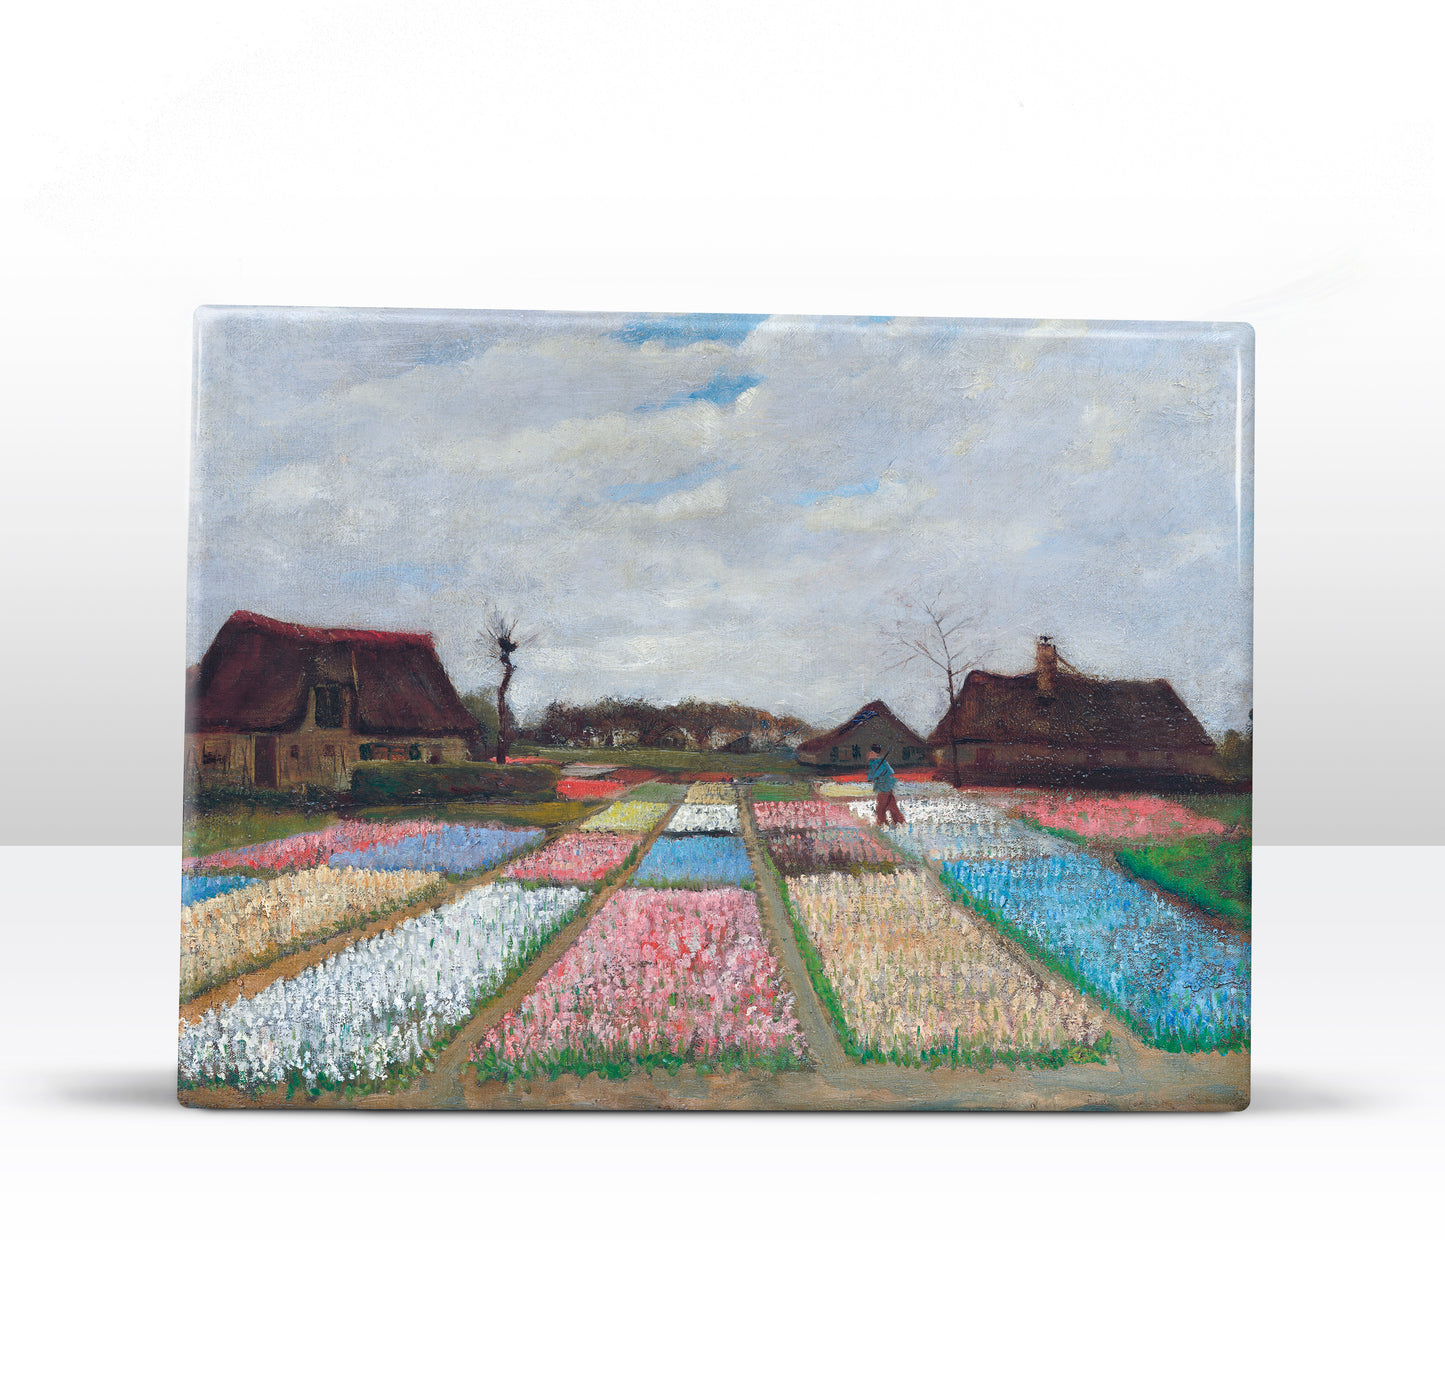 Laque print - Flowerbeds in Holland - Vincent van Gogh - 26 x 19.5 cm - LP202